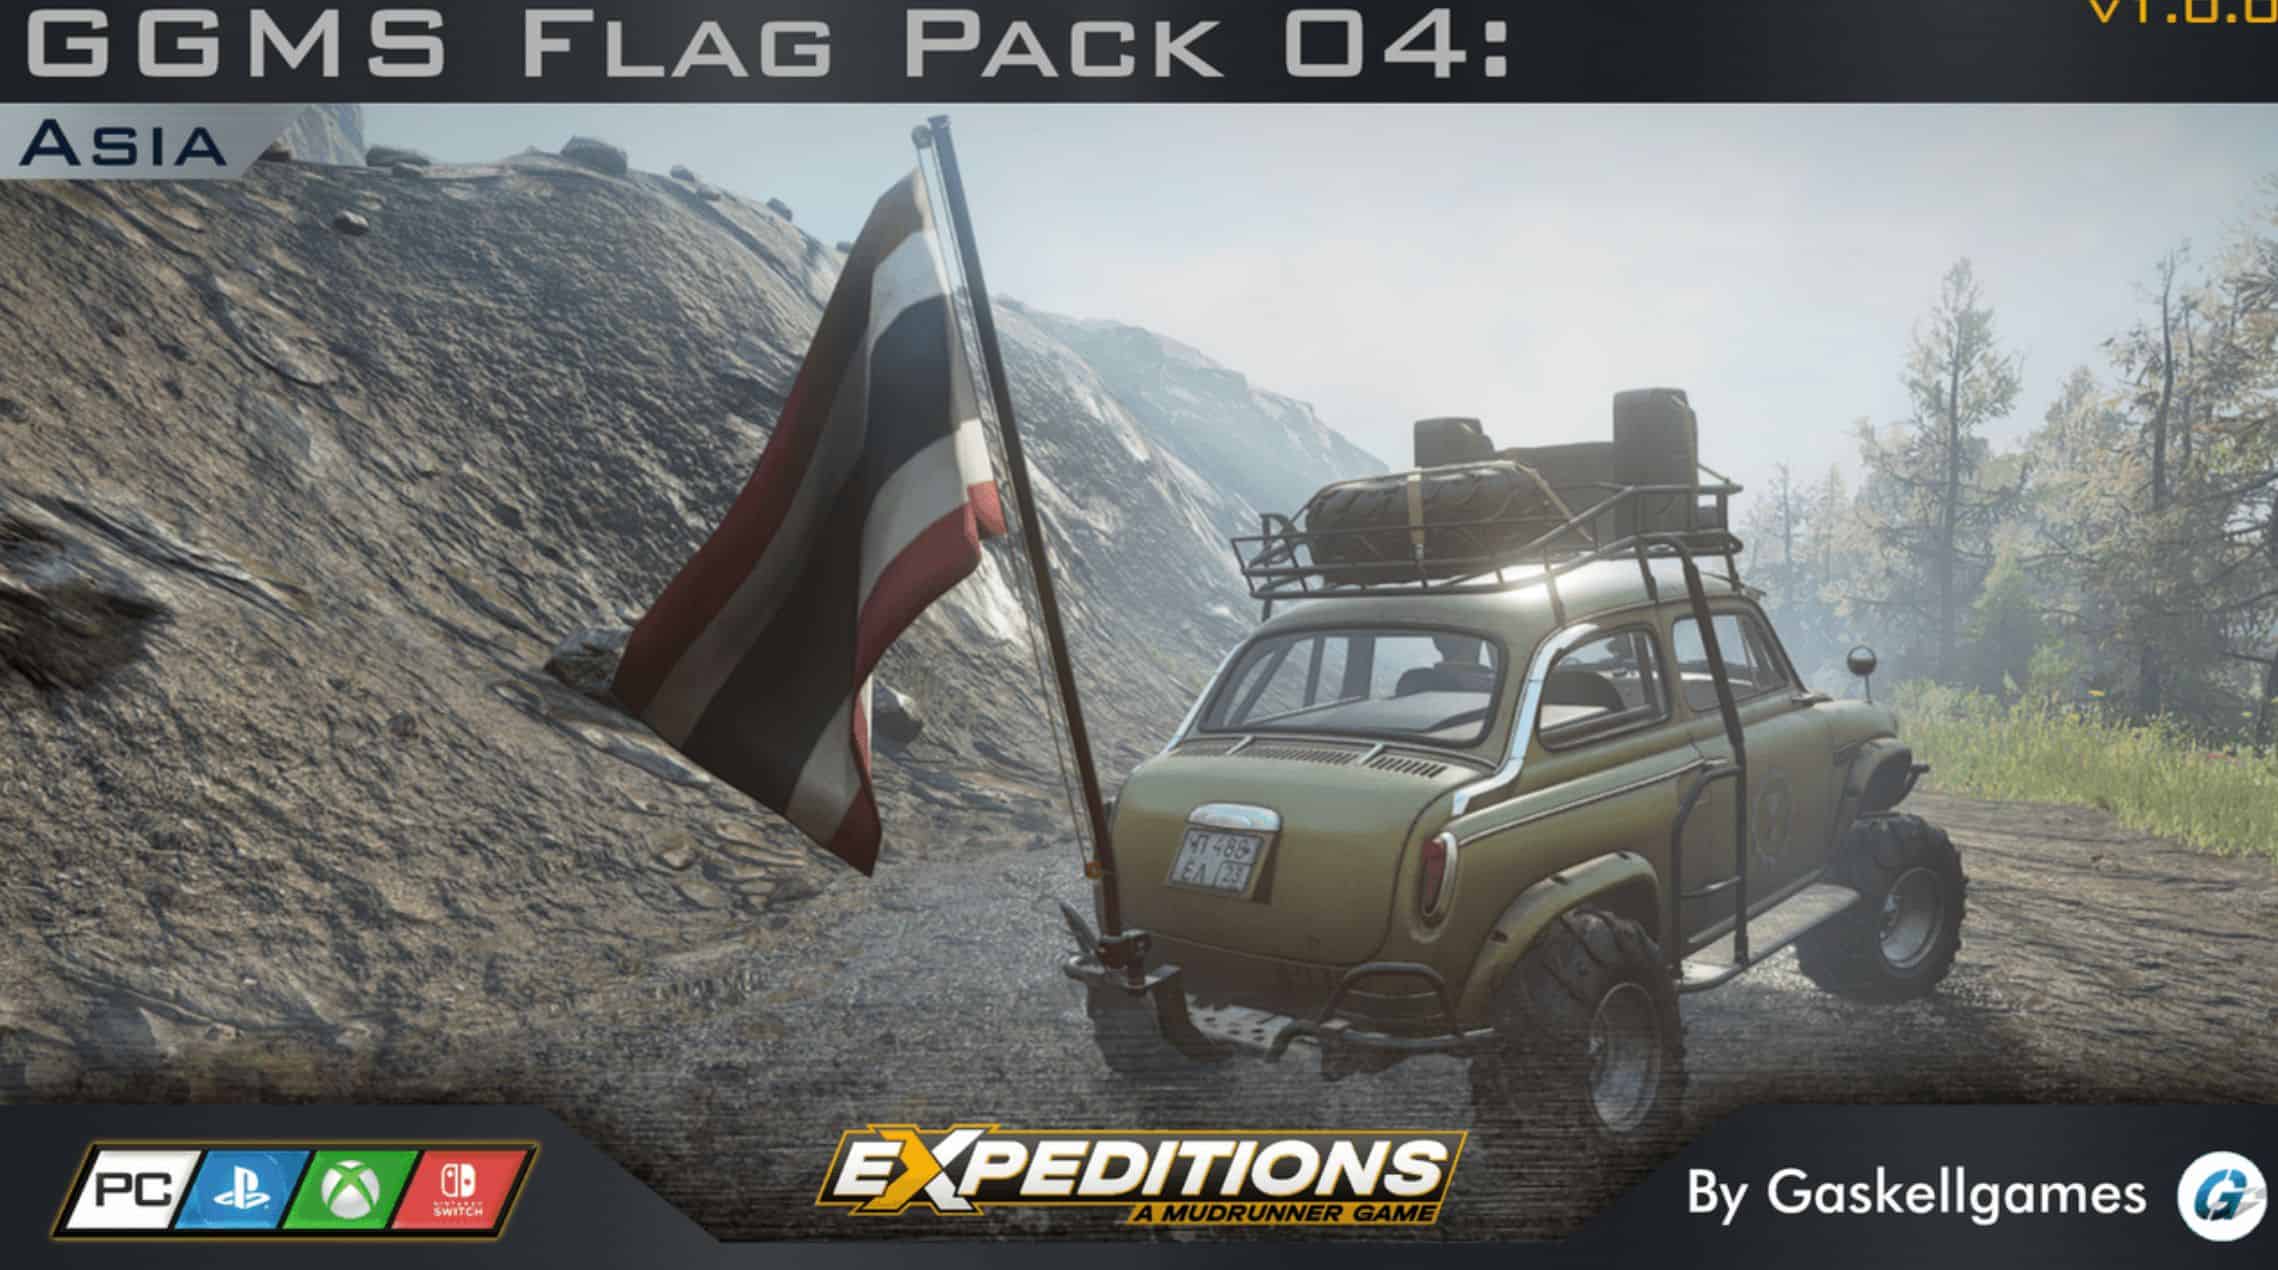 GGMS Flag Pack 04: Asia V1.0